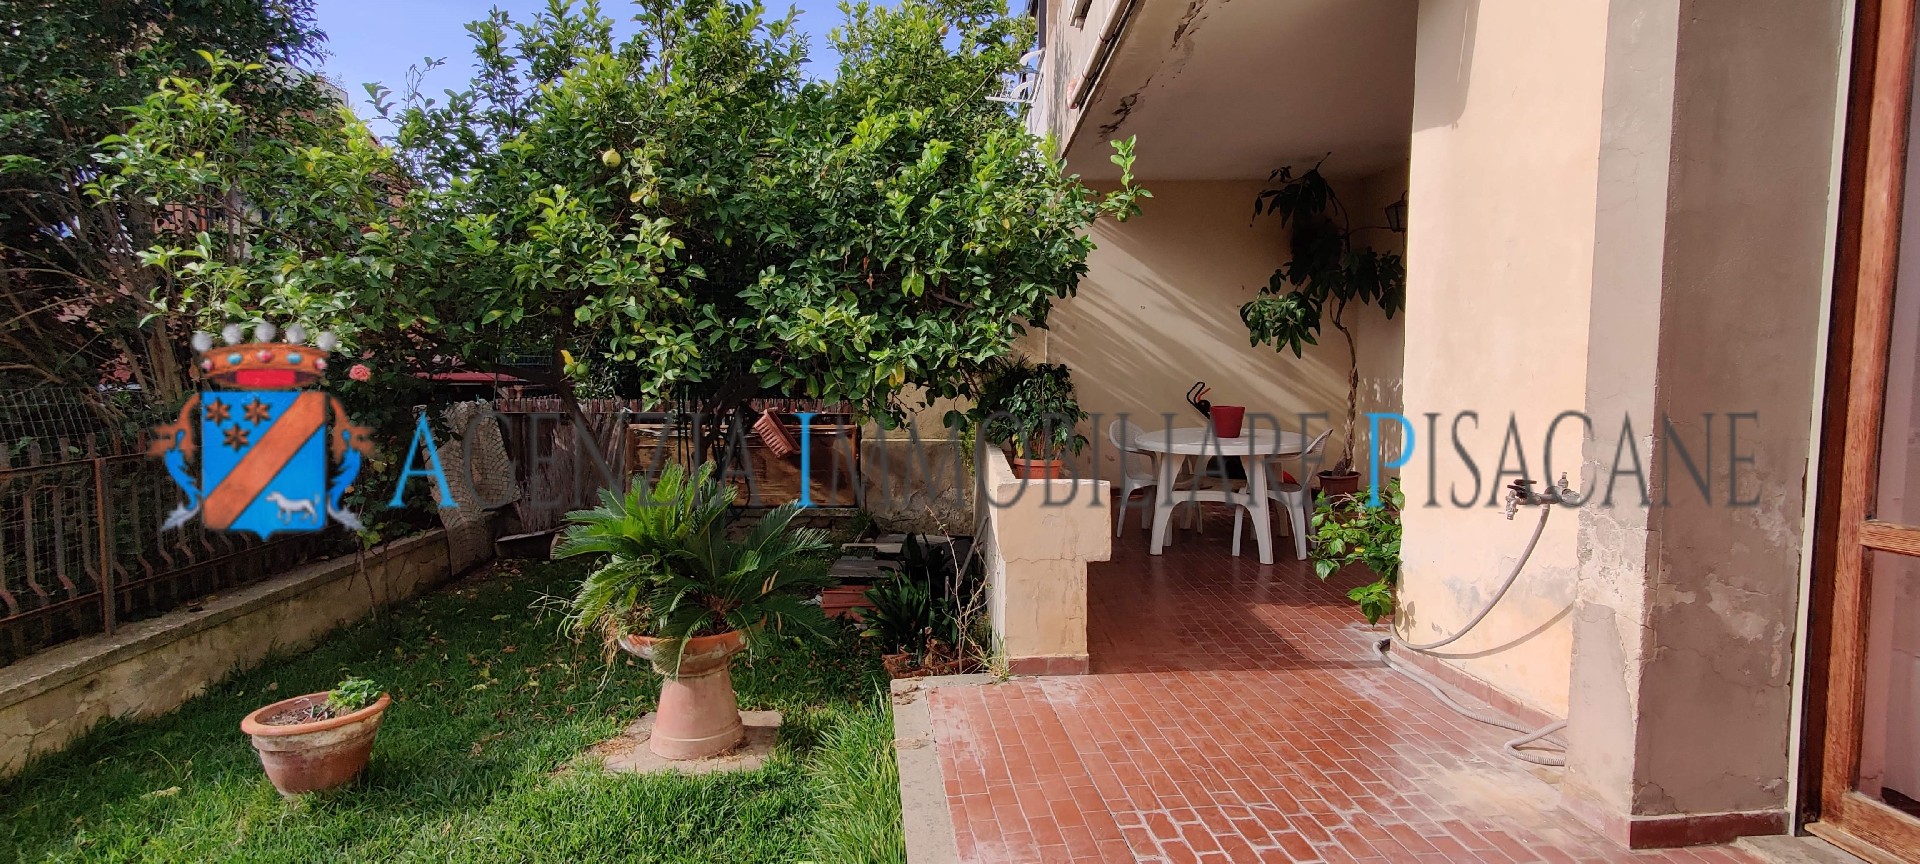 Portico e giardino posteriore con albero di limoni - Agenzia Immobiliare & Architettura Pisacane